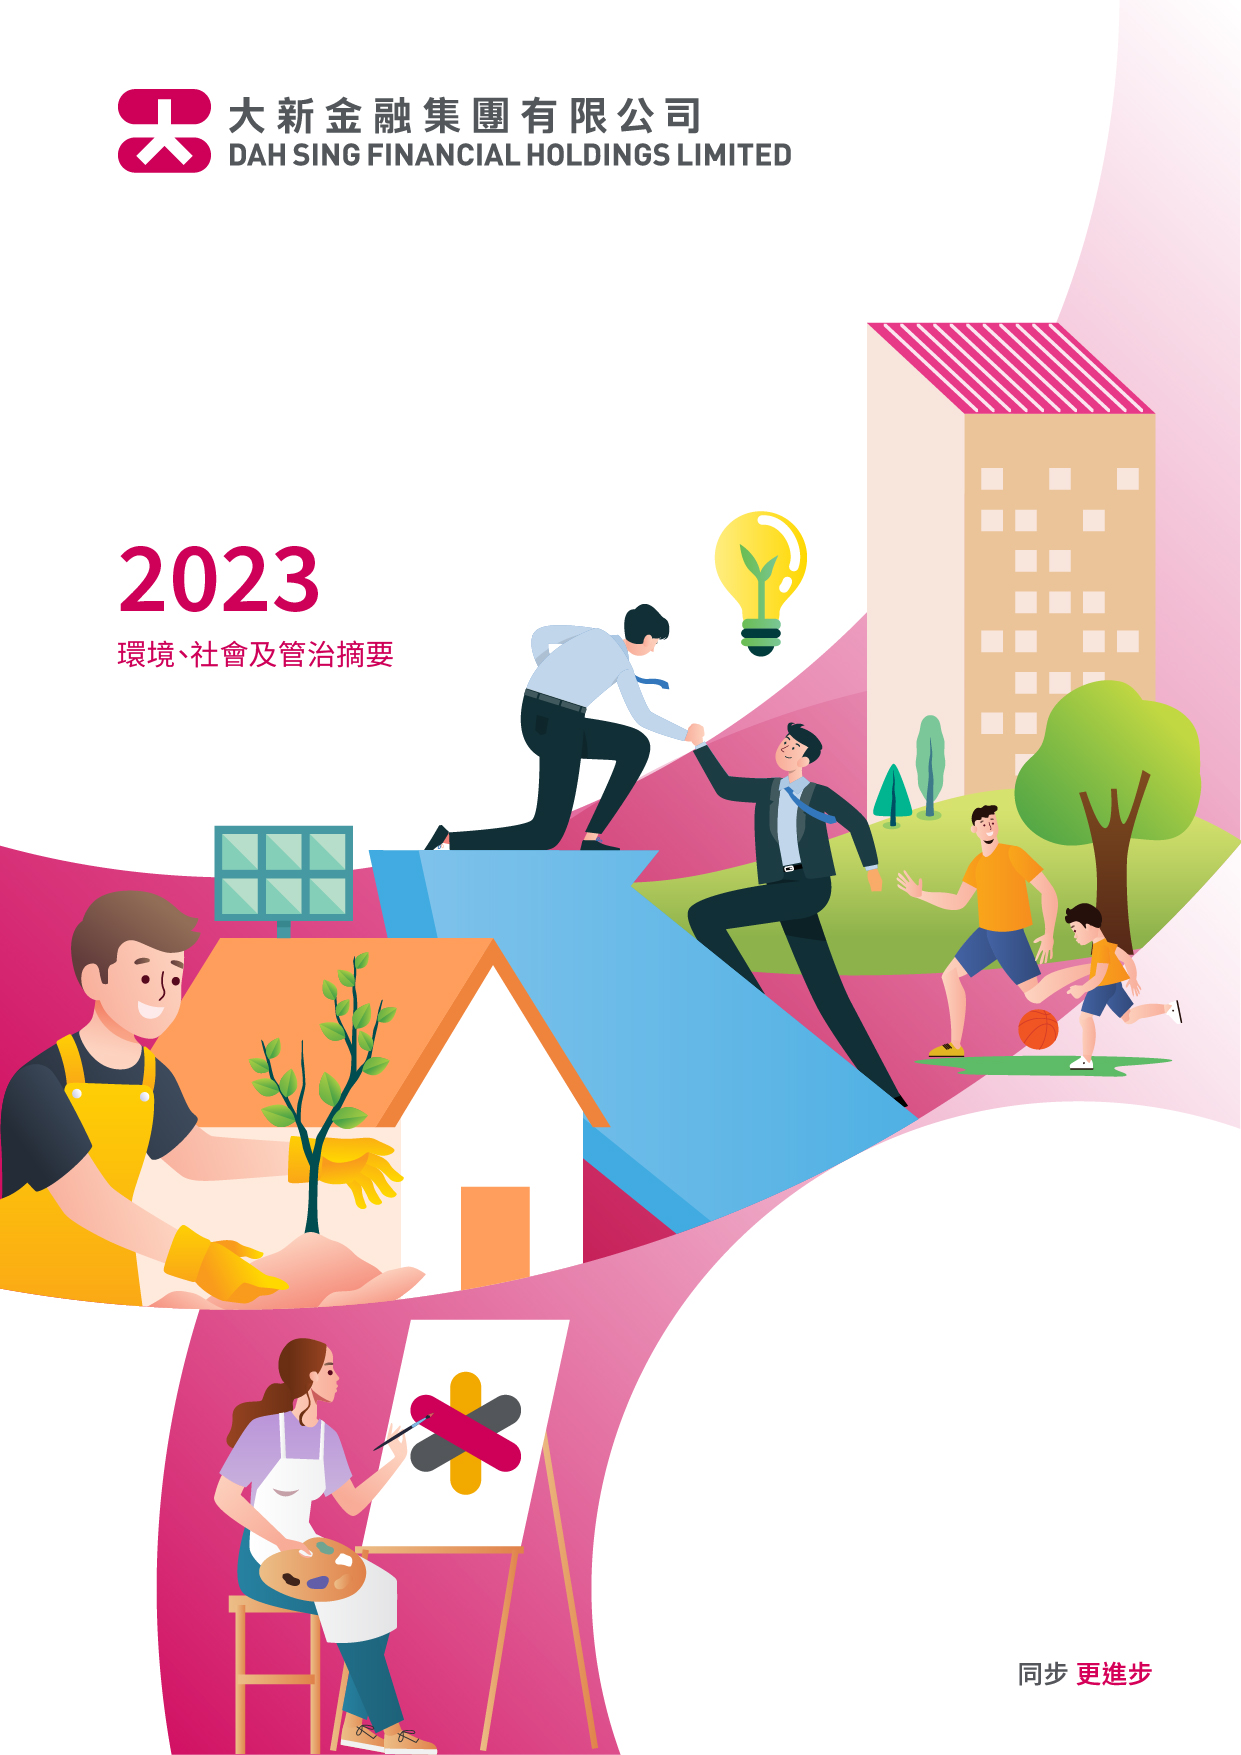 大新金融集團有限公司 - 2023年度環境、社會及管治摘要